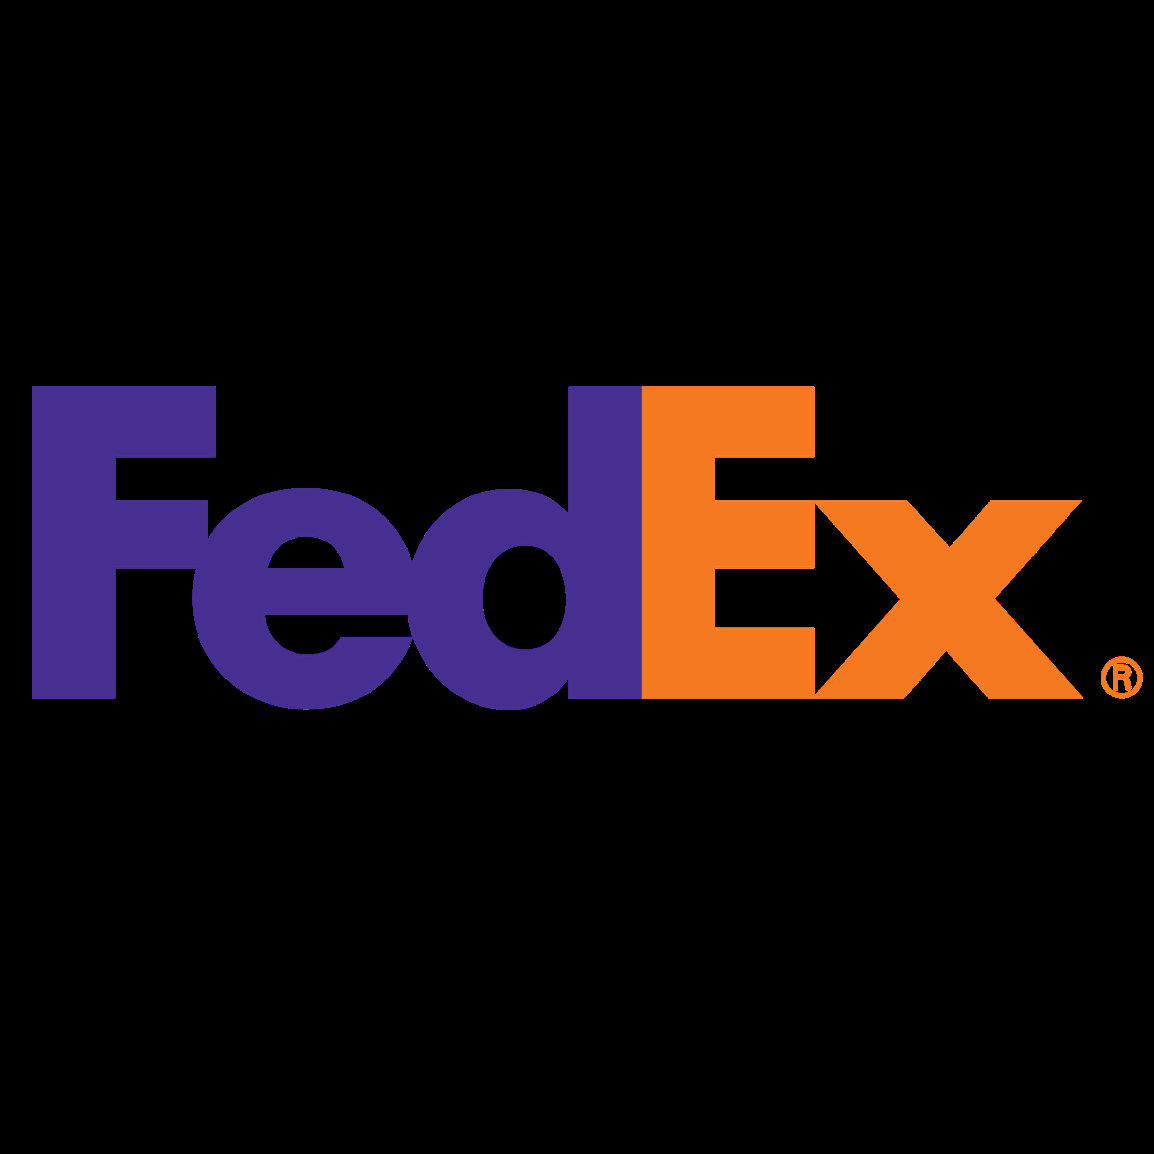 FedEx Ship Centre - Fournitures et matériel de salles d'expédition